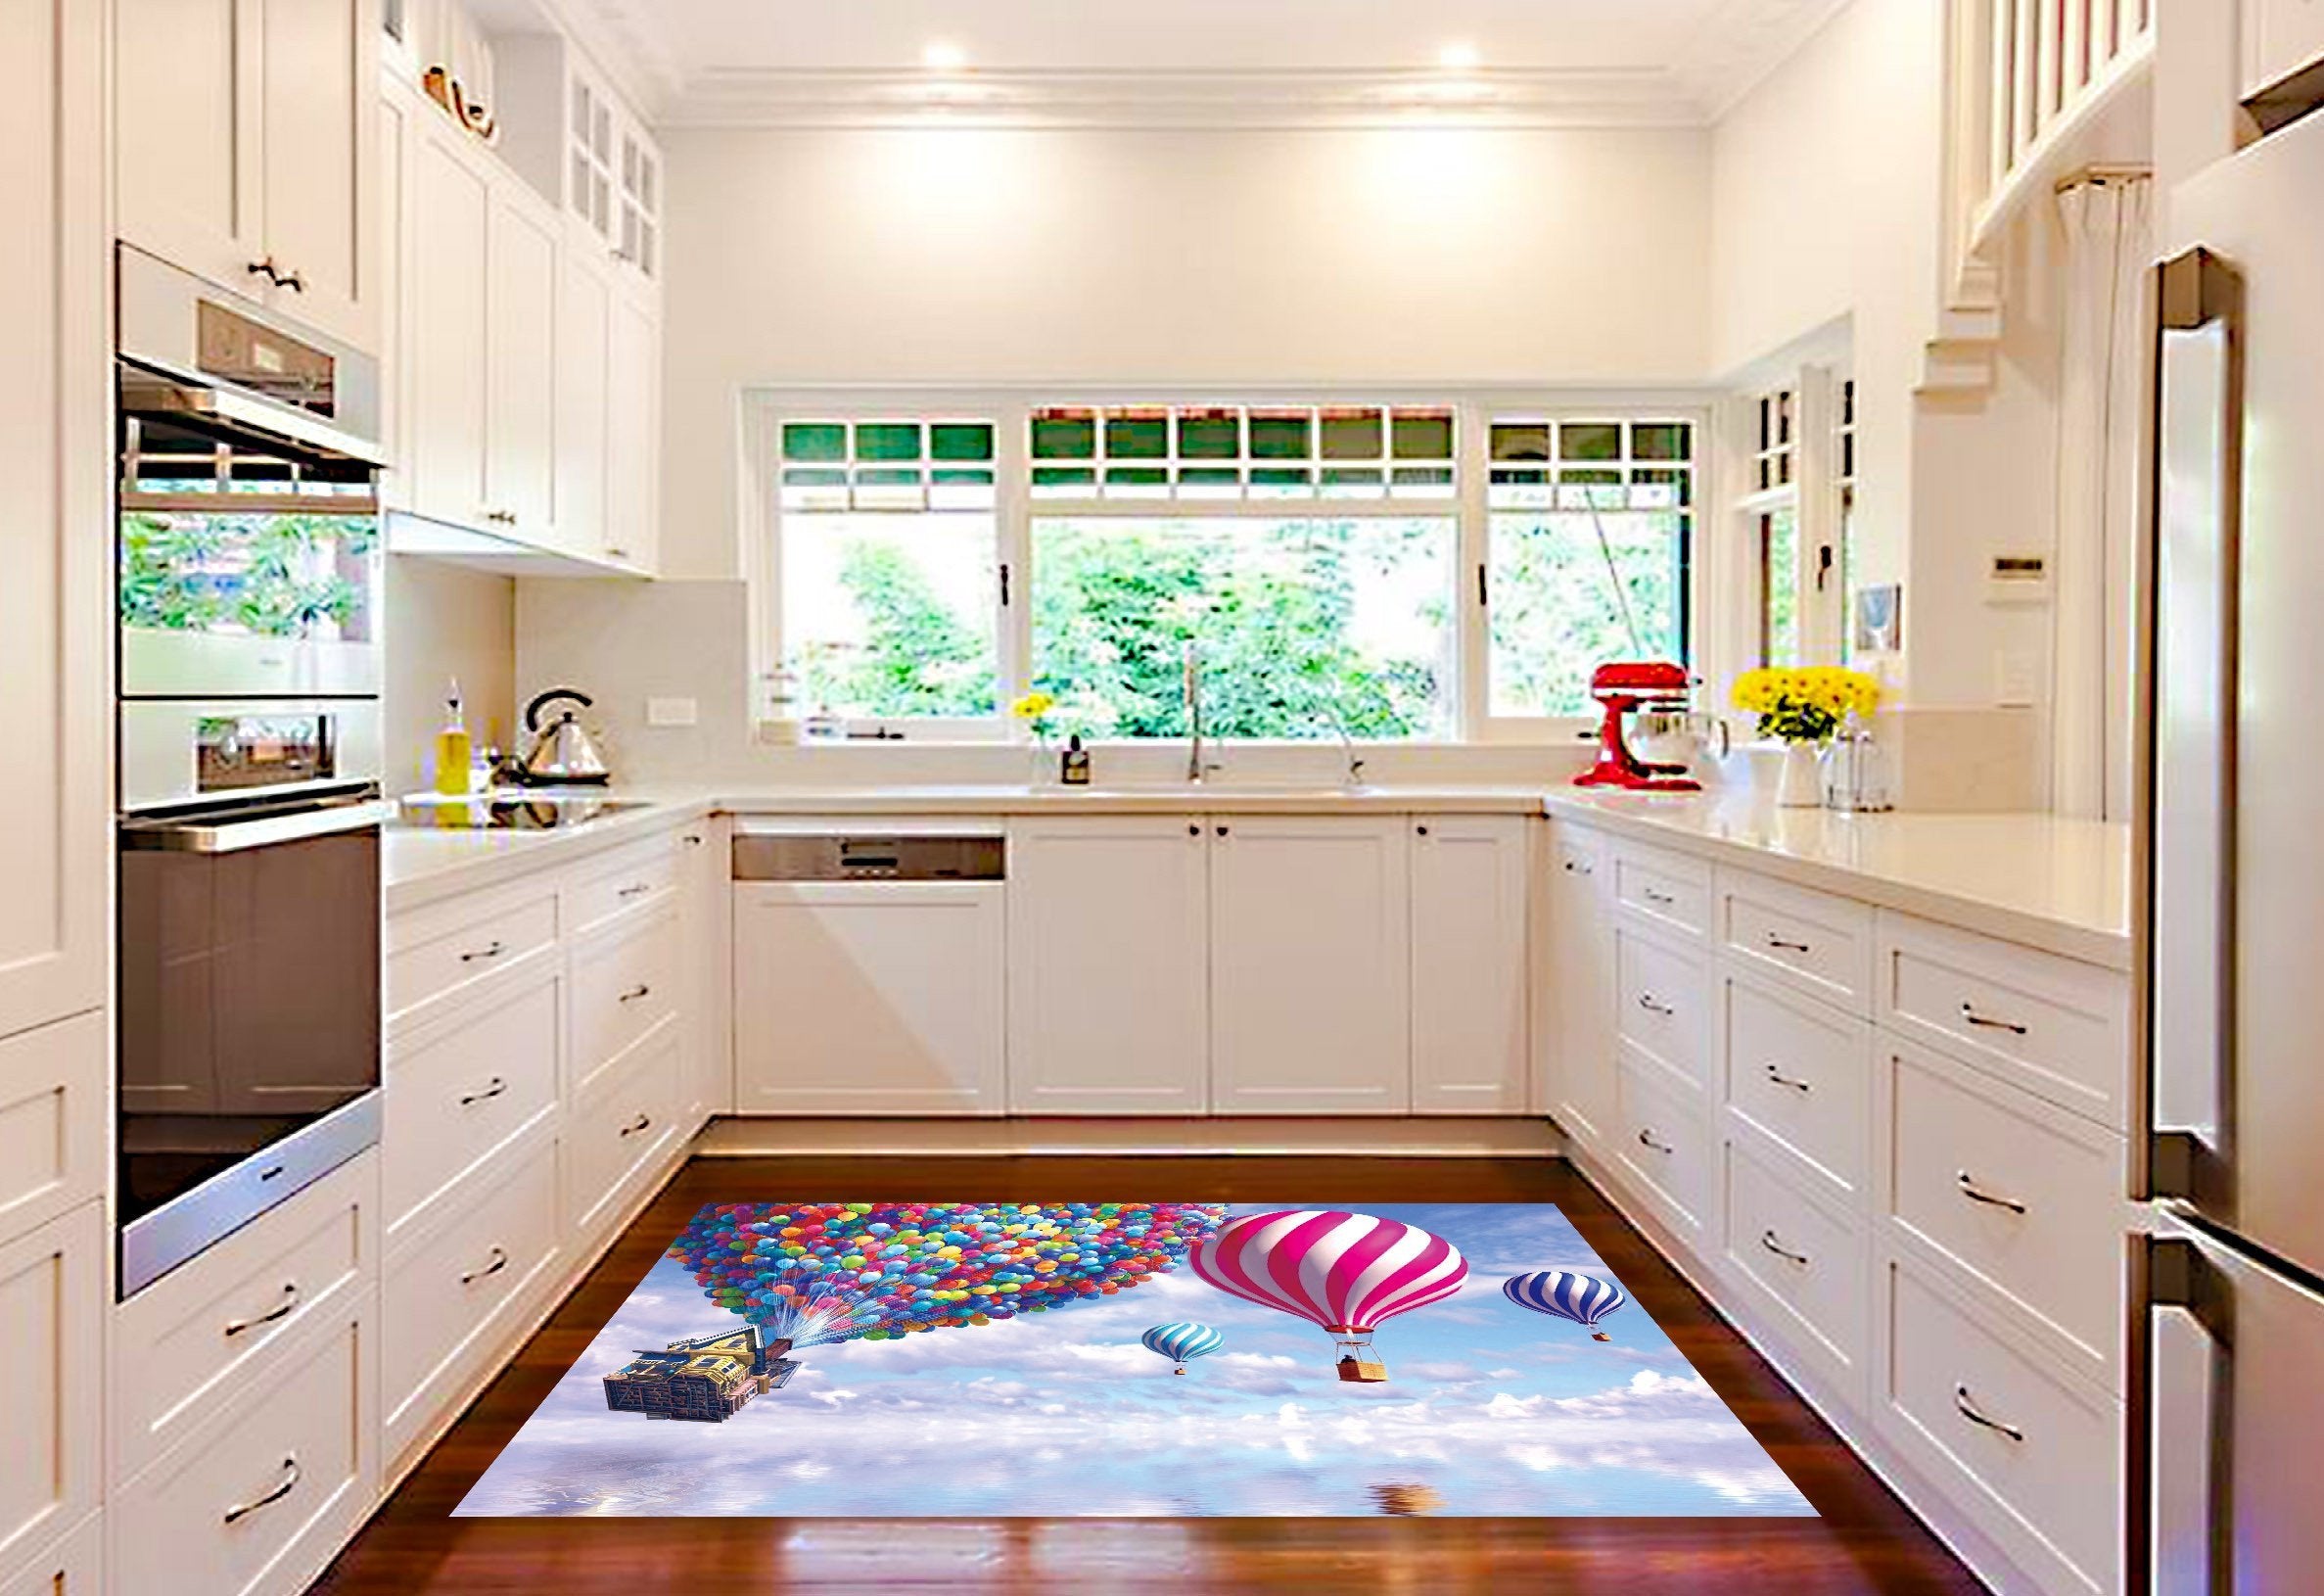 3D Sea Balloon House 610 Kitchen Mat Floor Mural Wallpaper AJ Wallpaper 